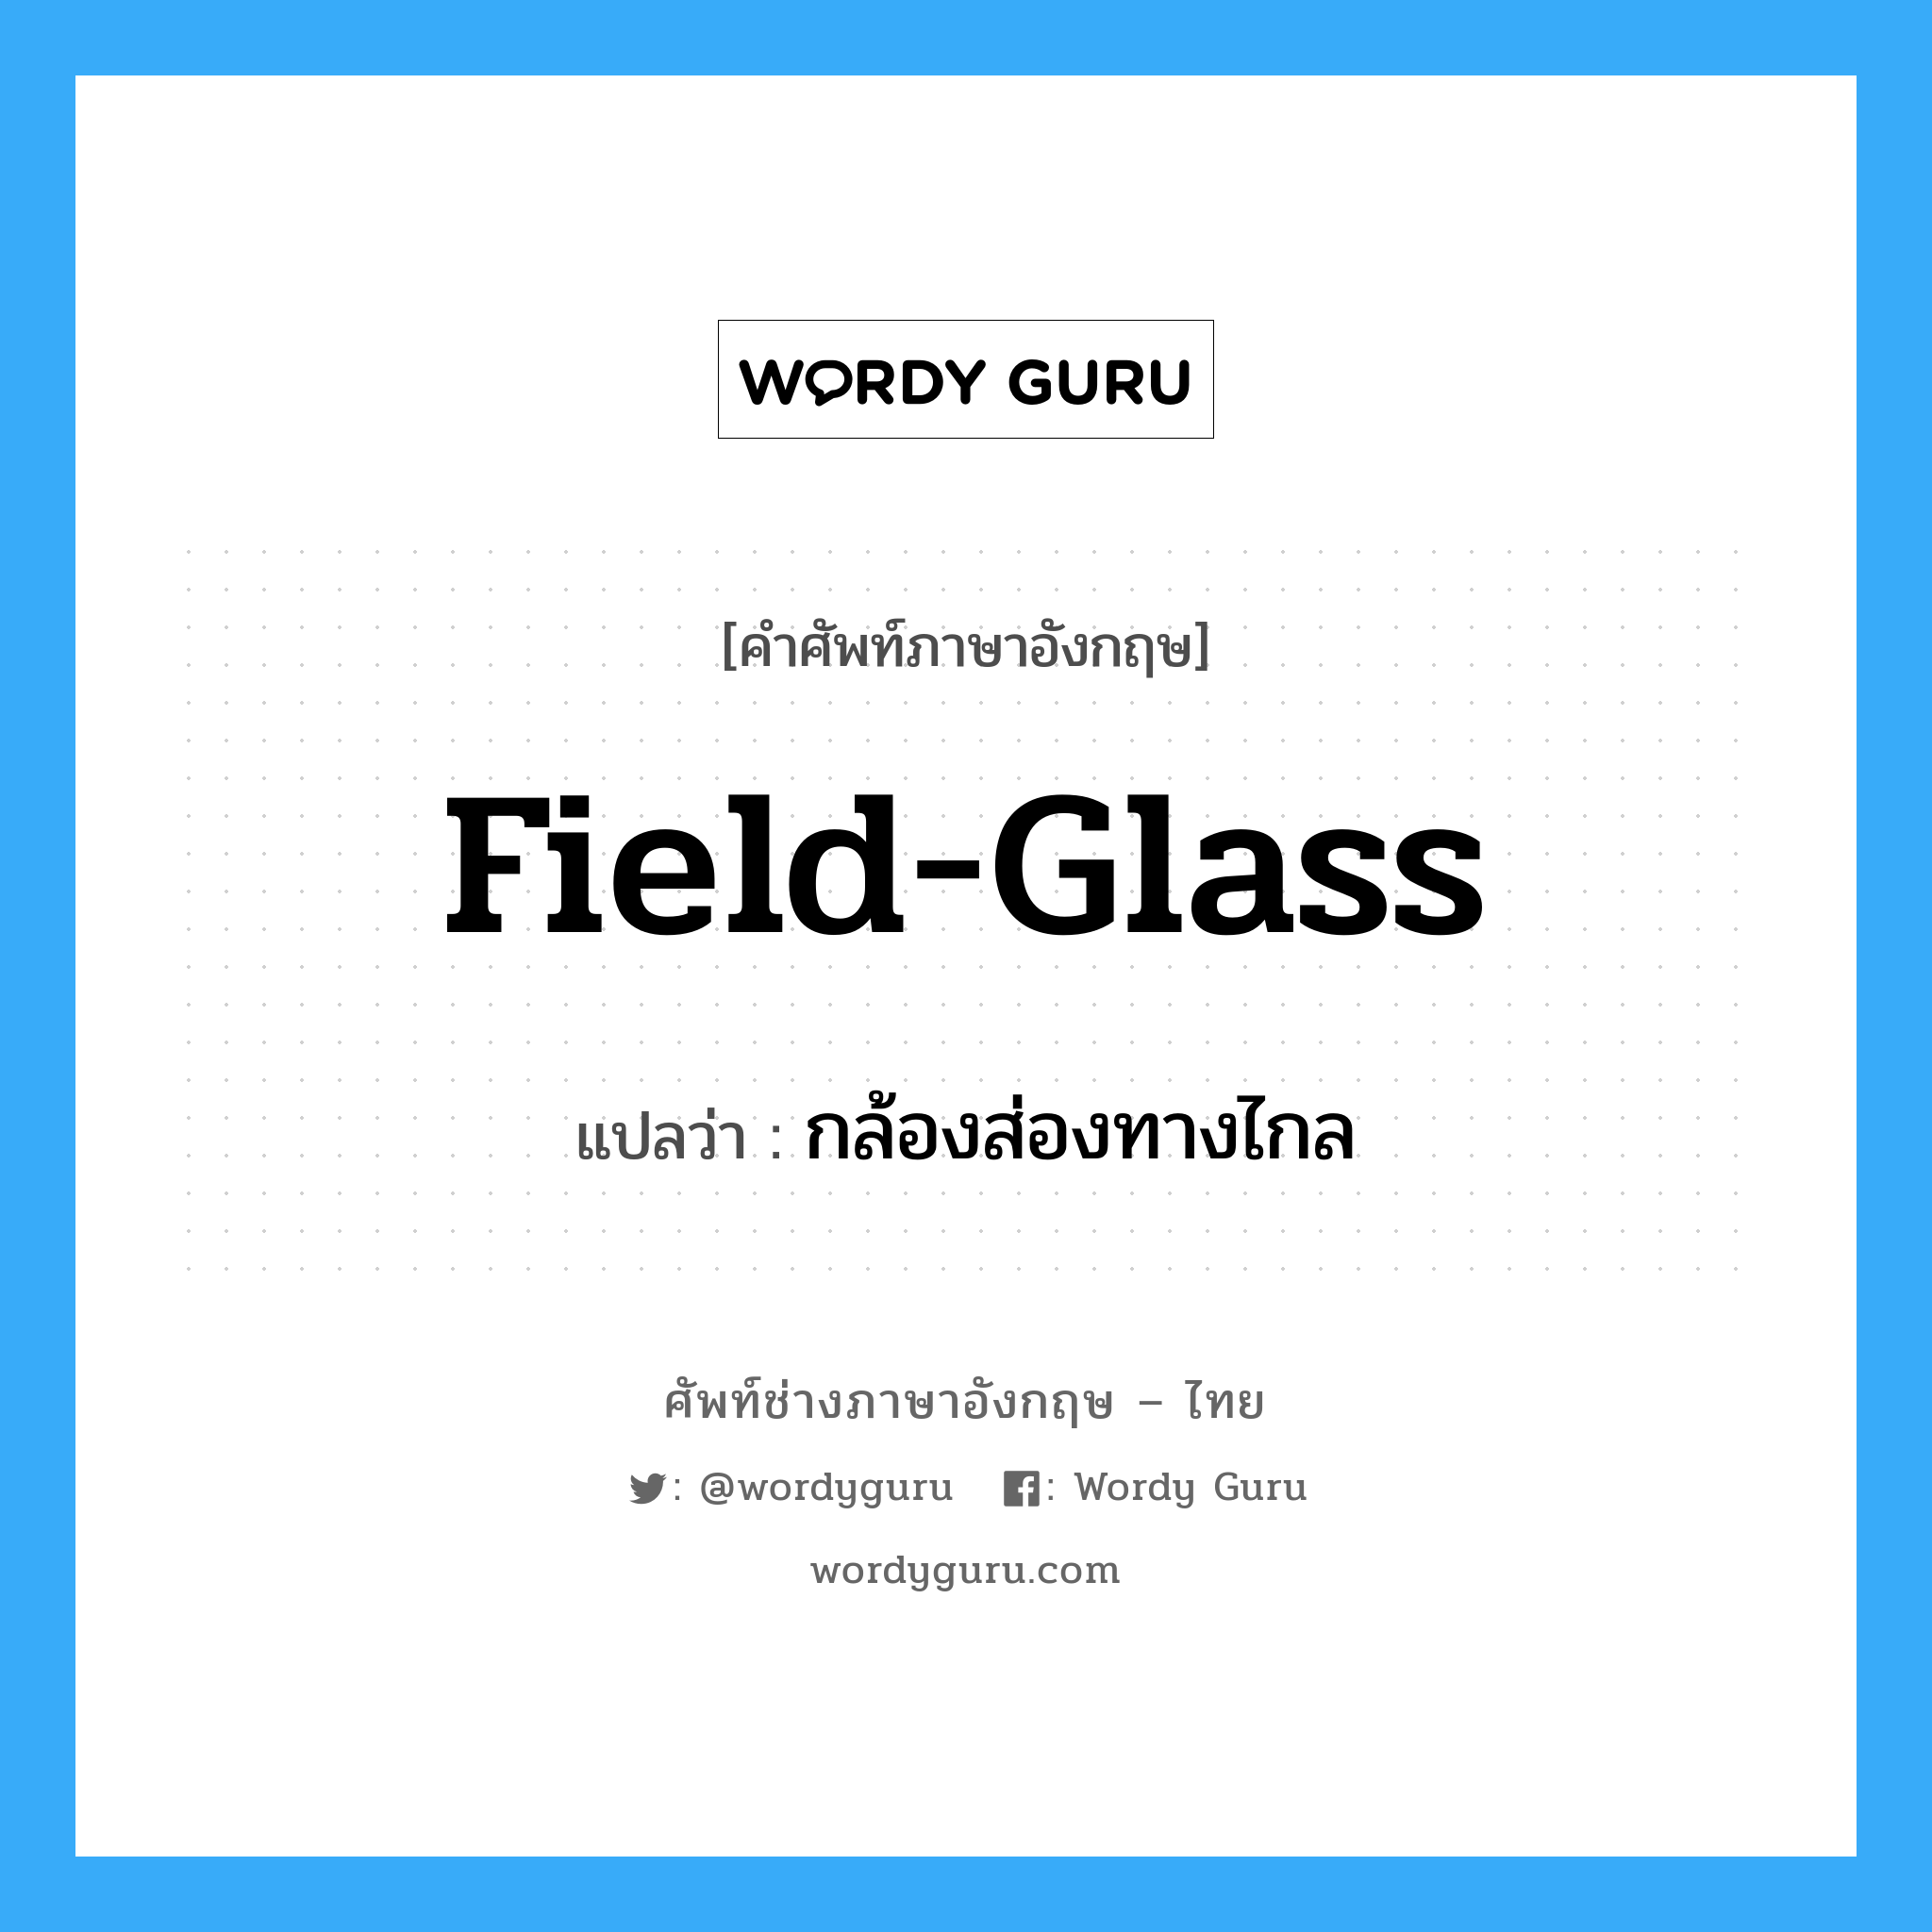 field-glass แปลว่า?, คำศัพท์ช่างภาษาอังกฤษ - ไทย field-glass คำศัพท์ภาษาอังกฤษ field-glass แปลว่า กล้องส่องทางไกล